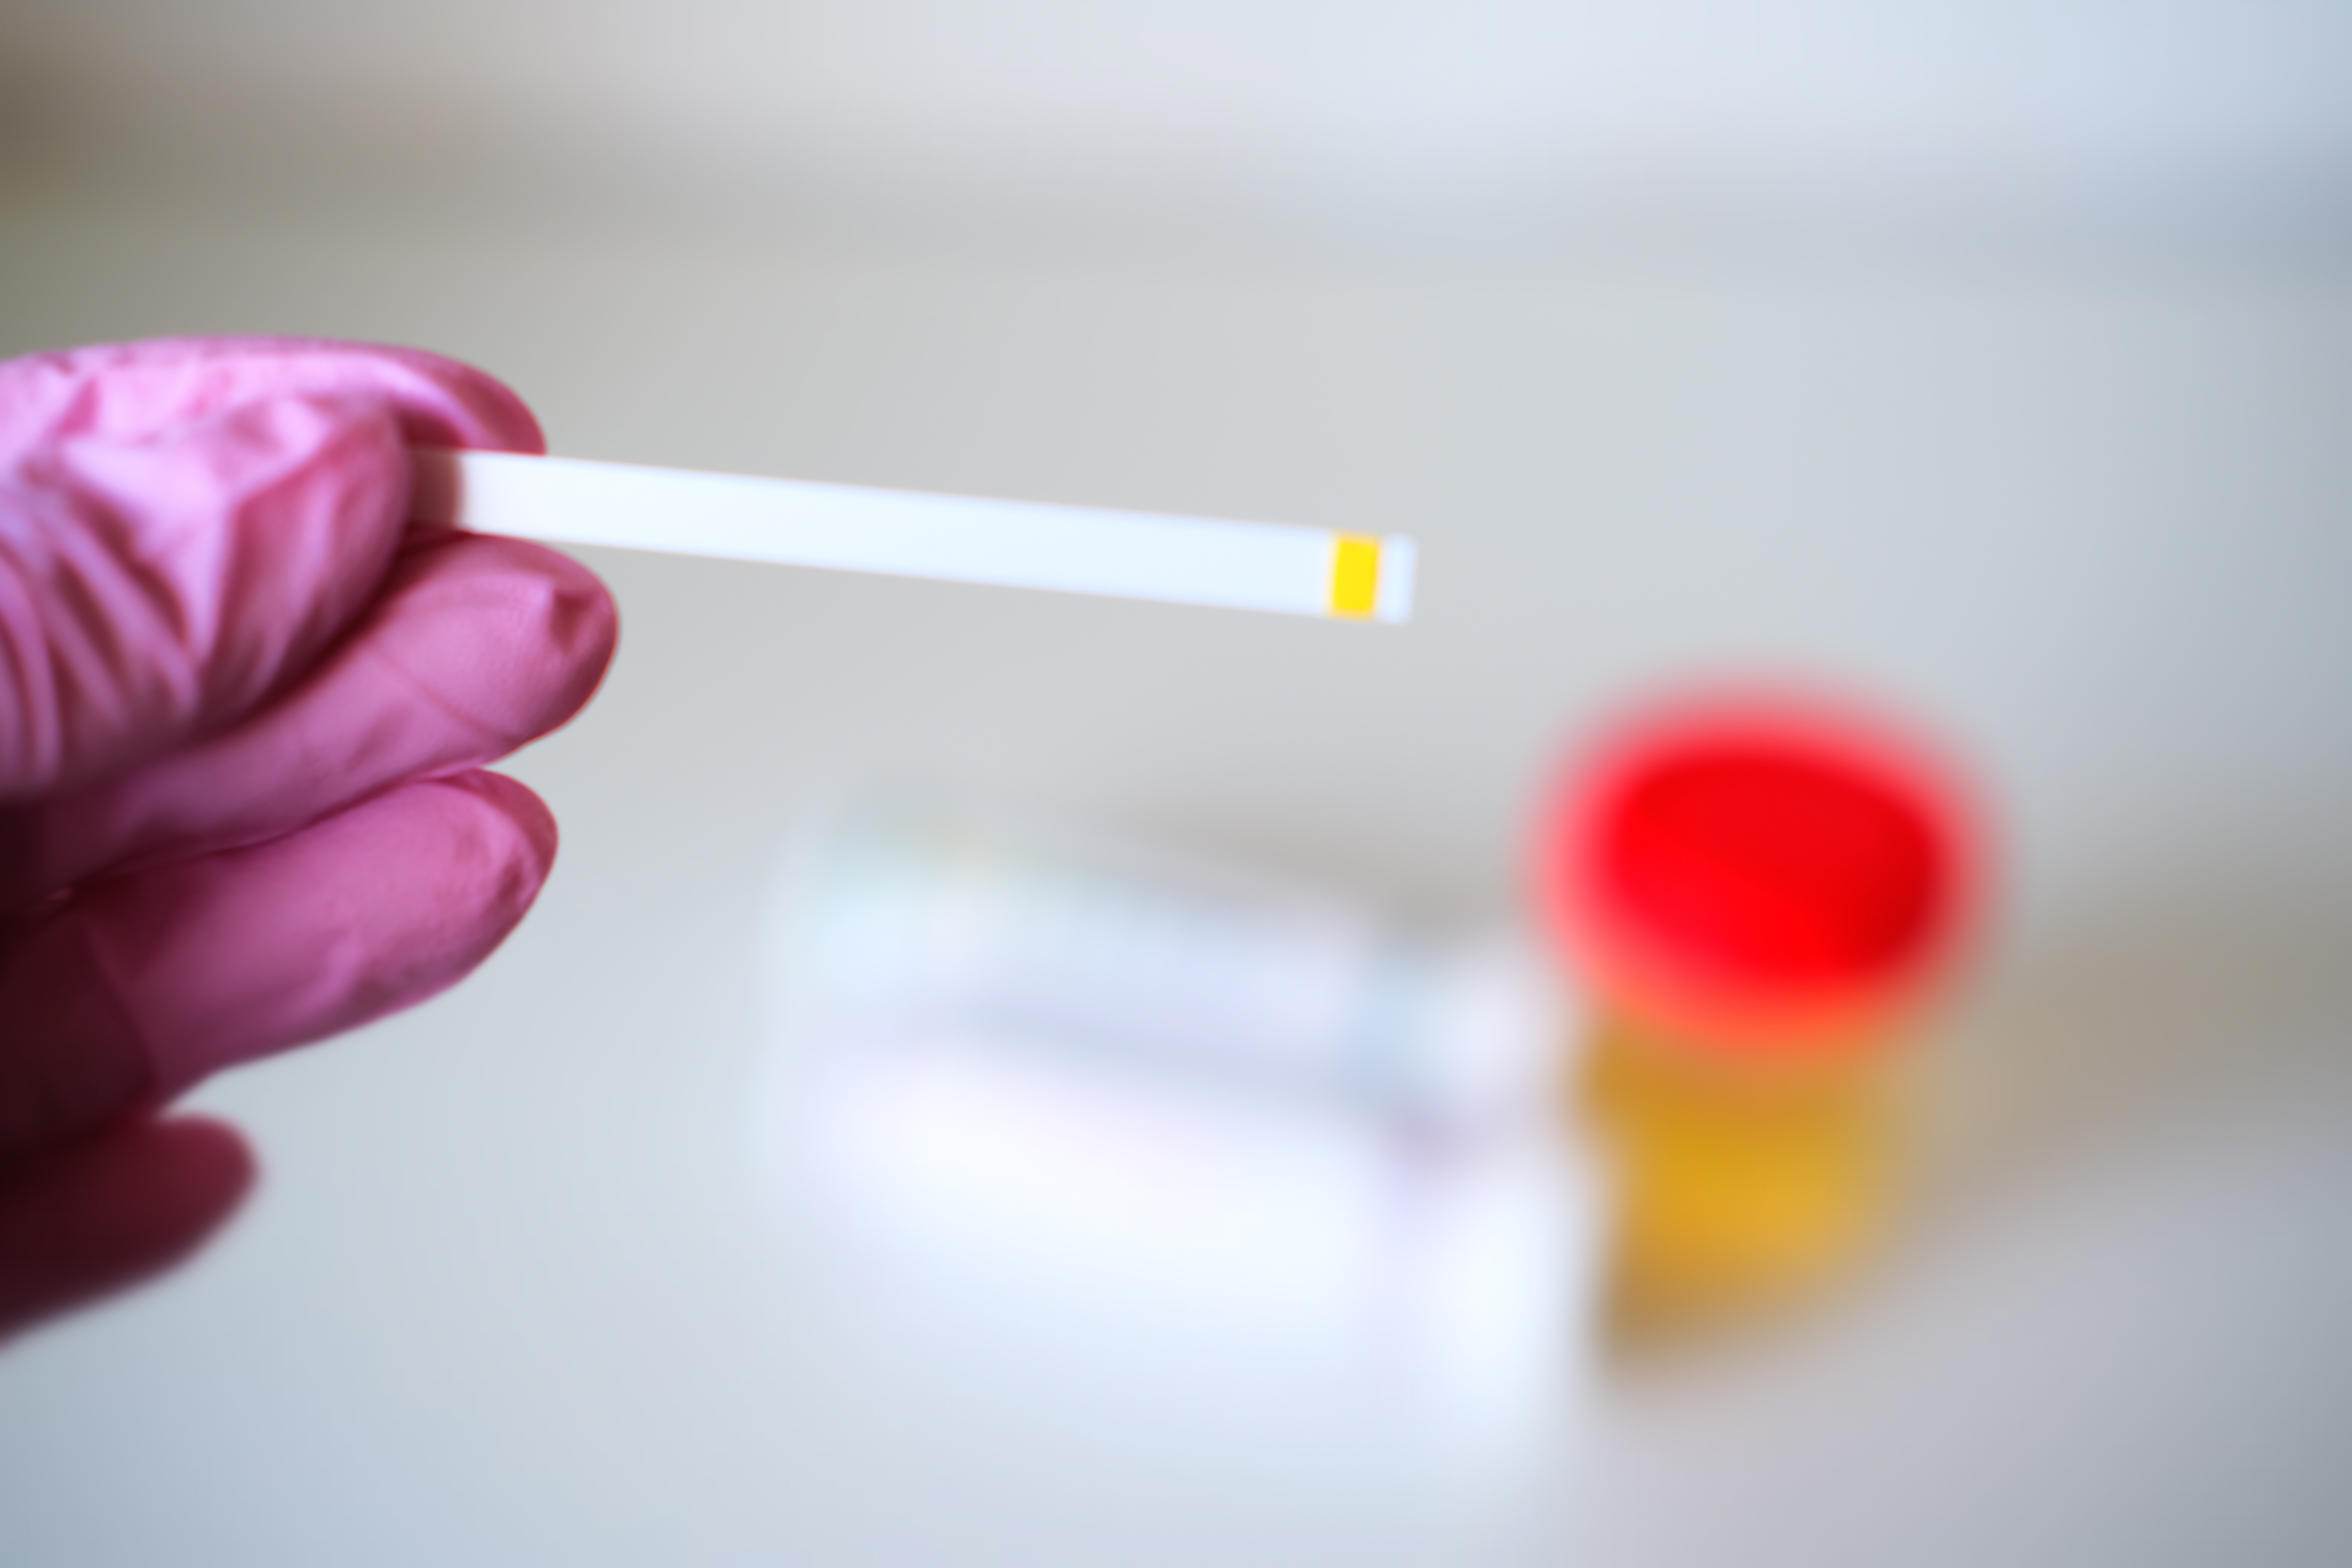 Ce test génétique urinaire pourrait prédire le cancer de la vessie des années avant le diagnostic (Visuel Adobe Stock 350279331)